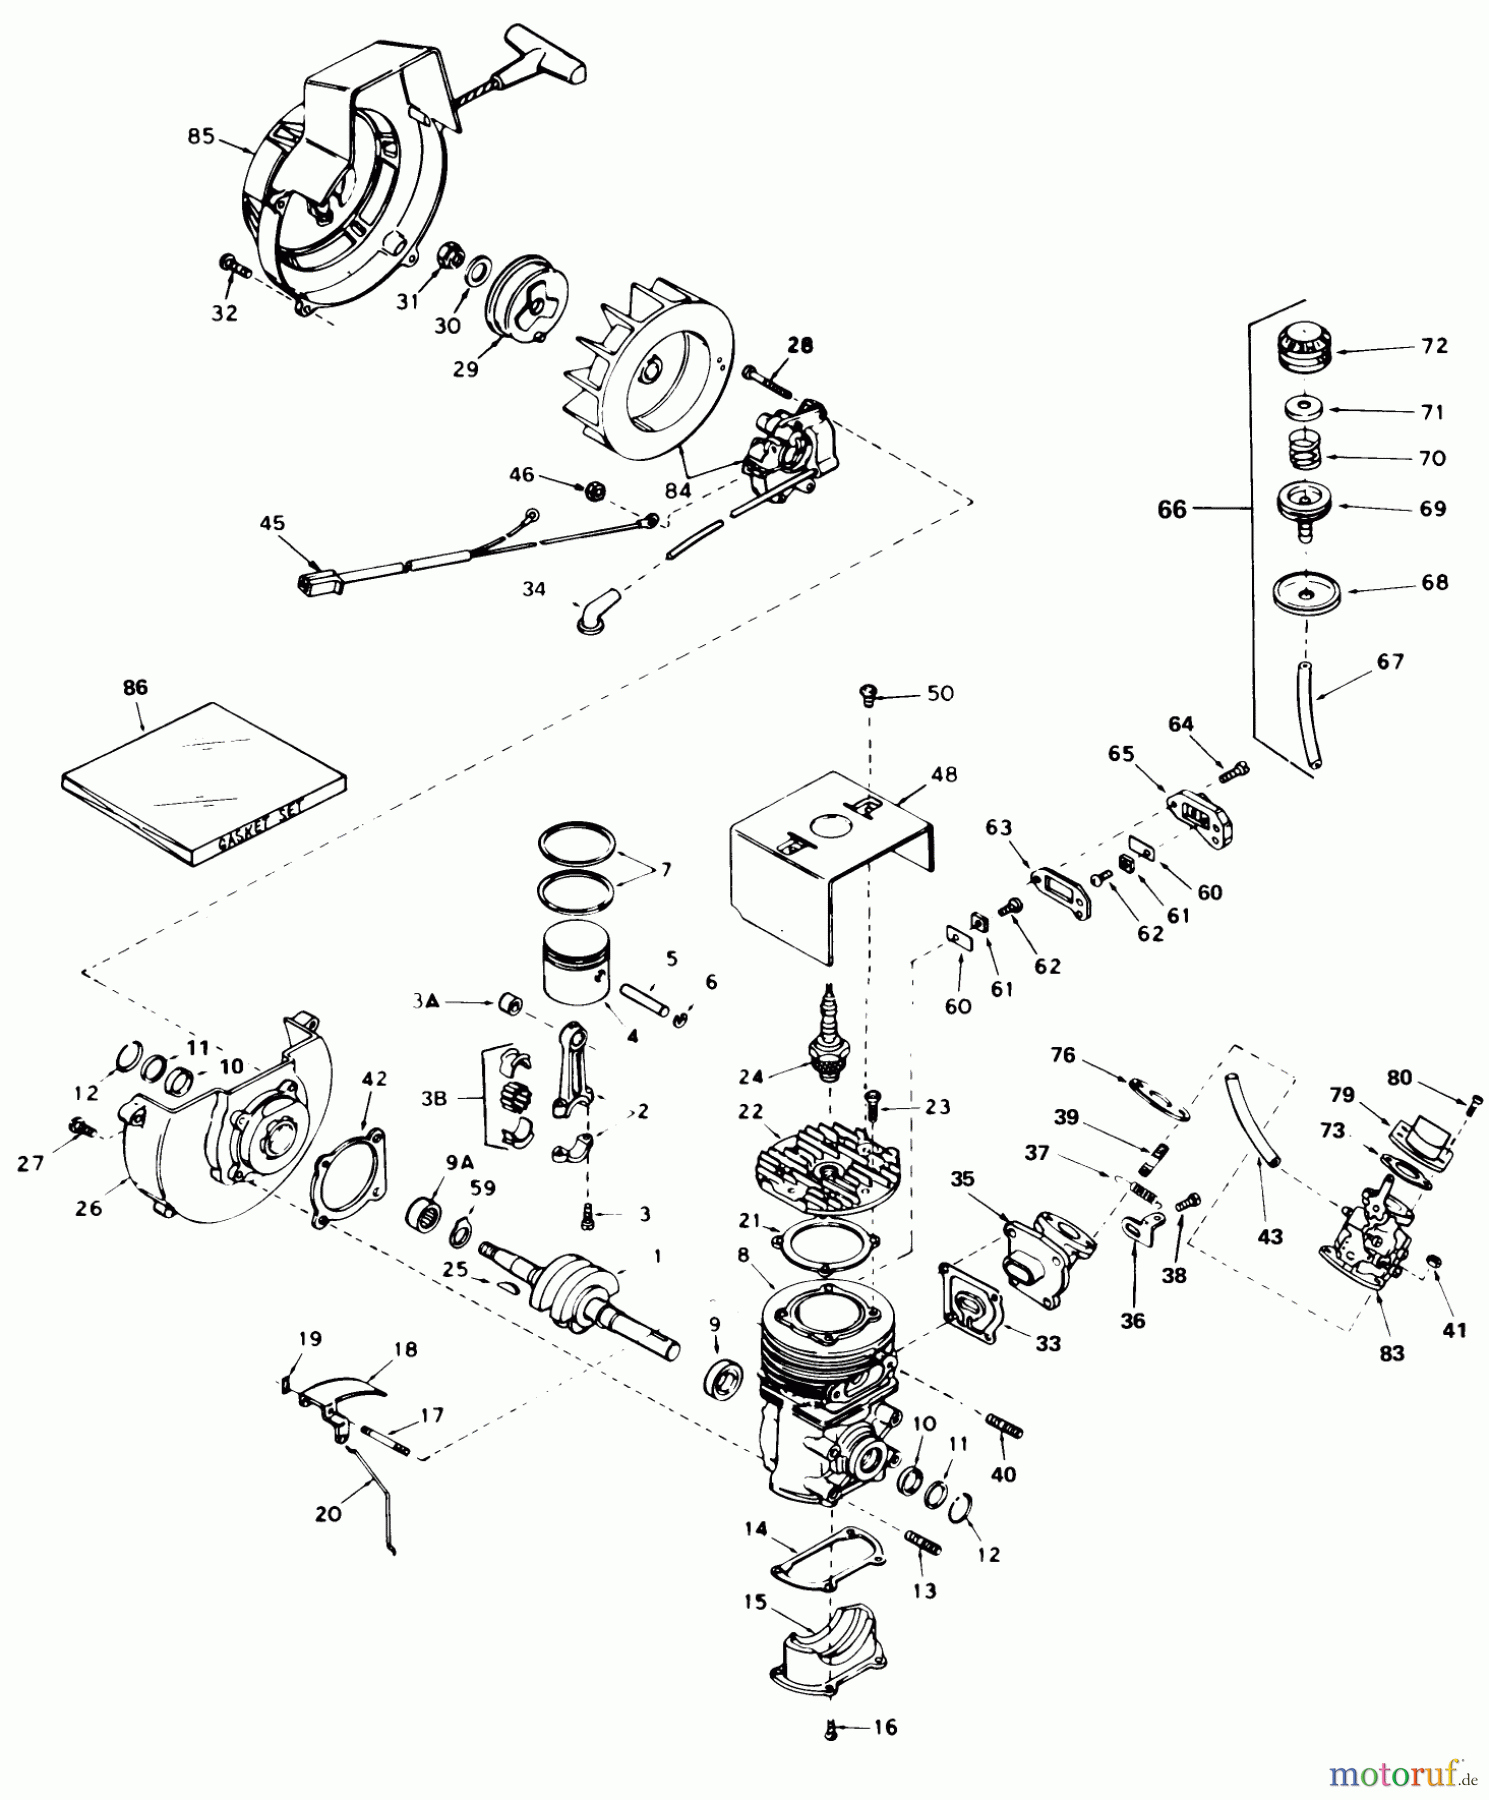  Toro Neu Snow Blowers/Snow Throwers Seite 1 31506 - Toro Snowmaster, 1977 (7000001-7999999) ENGINE ASSEMBLY ENGINE, TECUMSEH MODEL NO. AH 520 TYPE 1574B